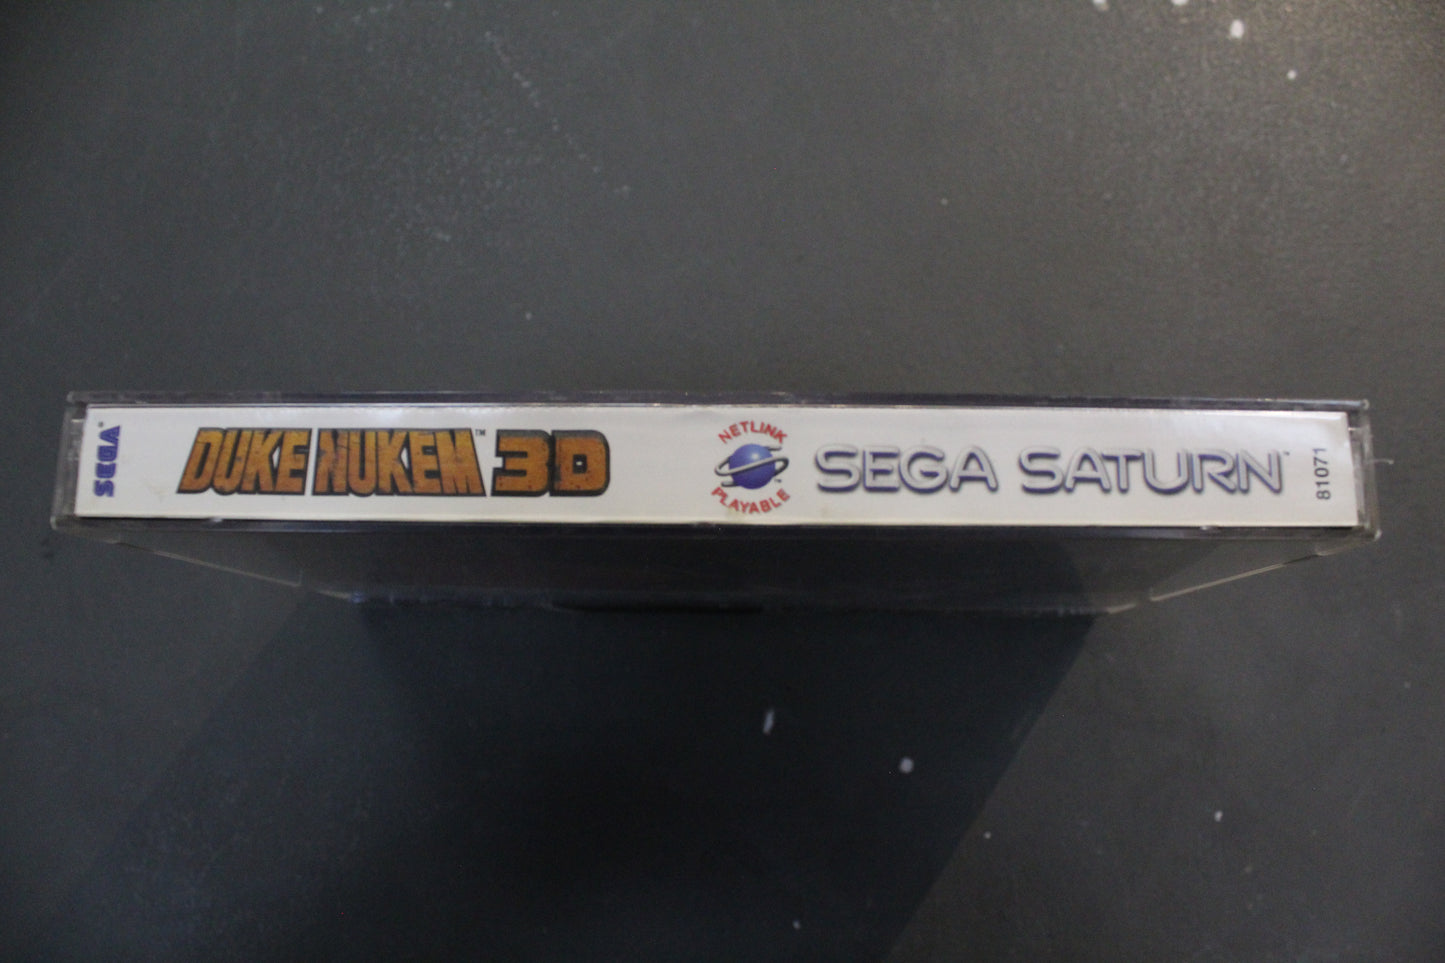 Duke Nukem 3d for the Sega Saturn, CIB, Tested and Works